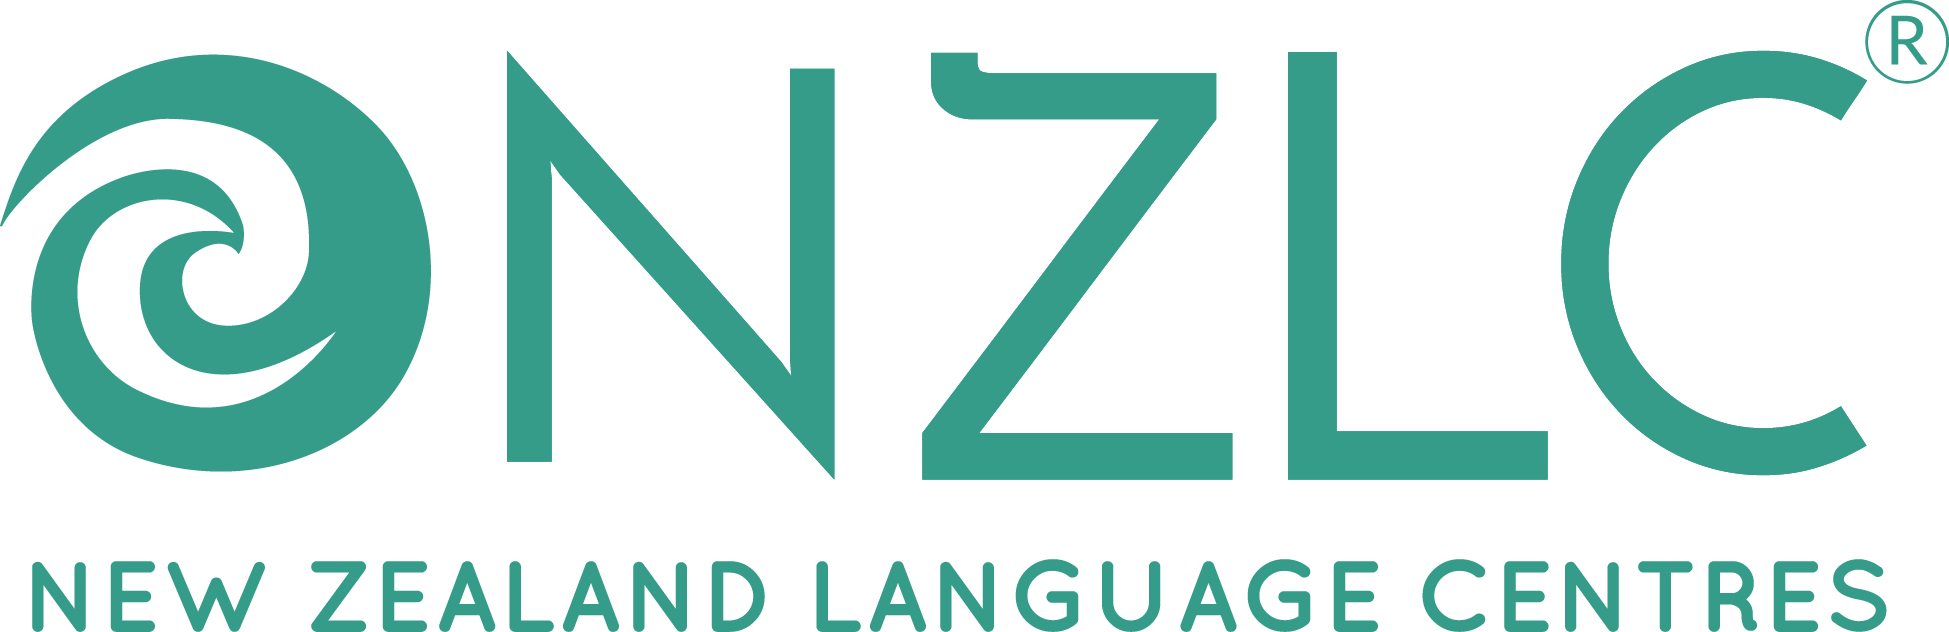 New Zealand Language Centres (NZLC)
 | New Zealand